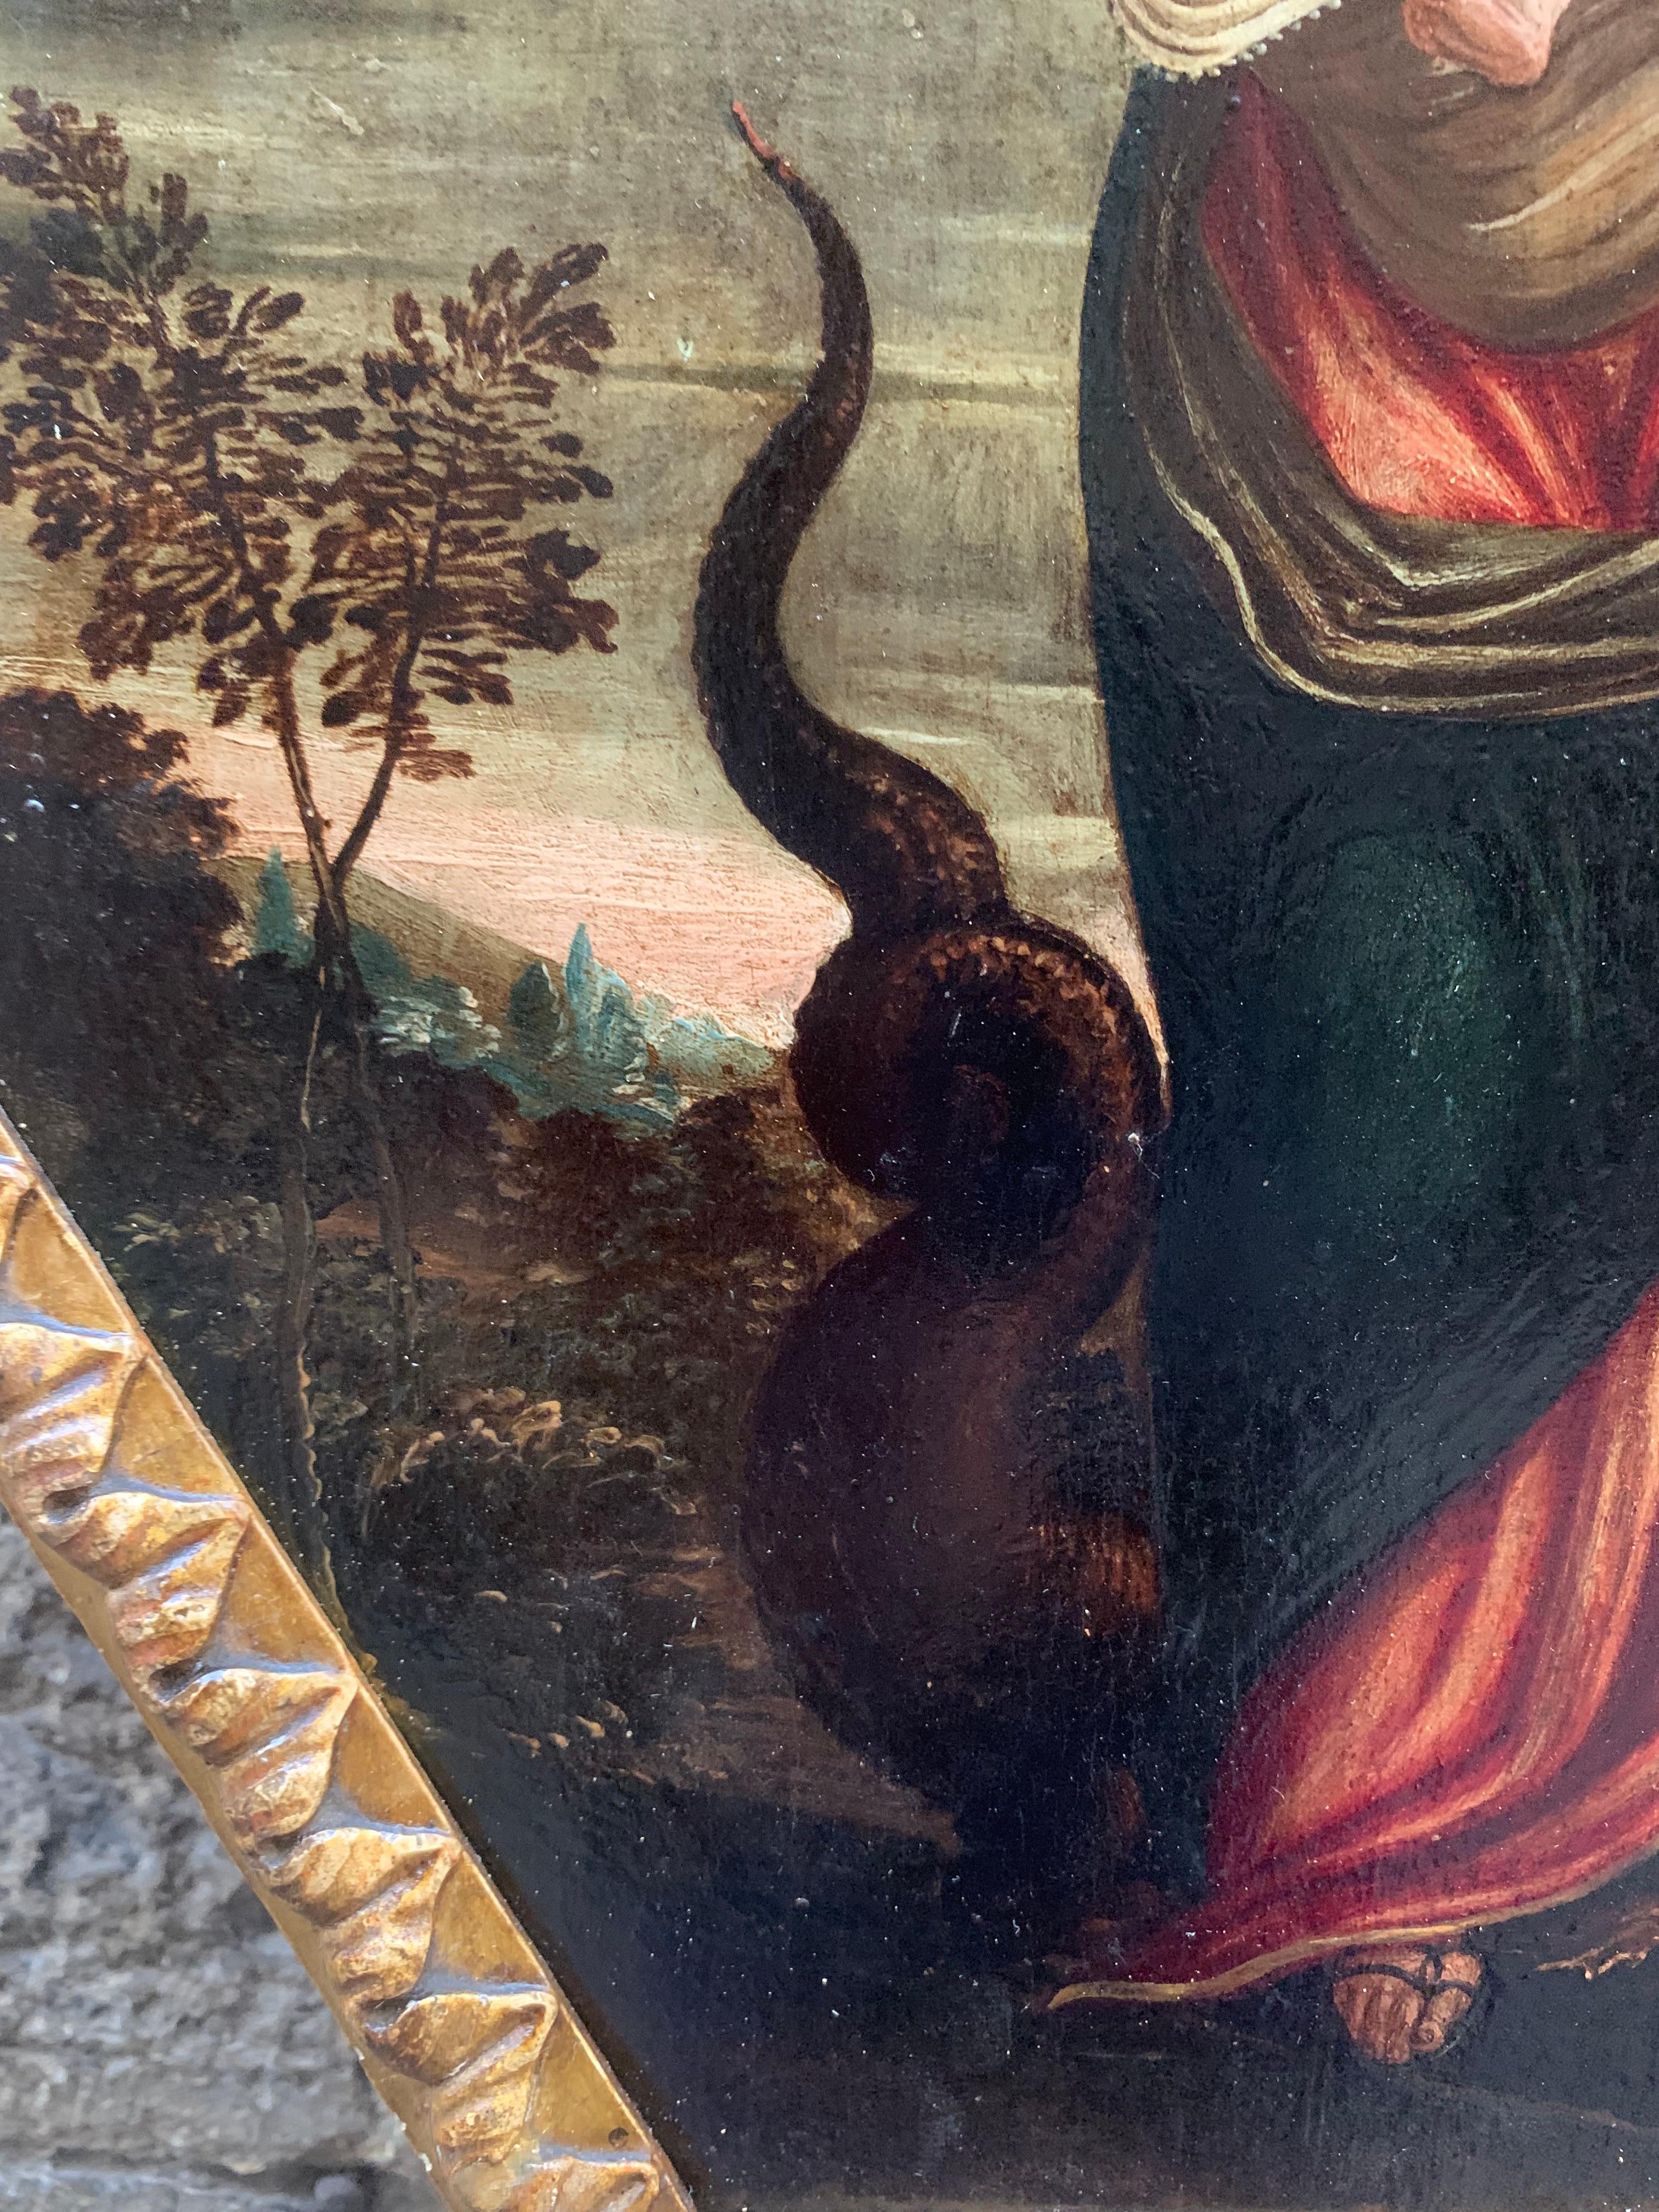 Fine XVI secolo. Immacolata concezione. Vergine con il bambino ed il drago. - Painting by Unknown